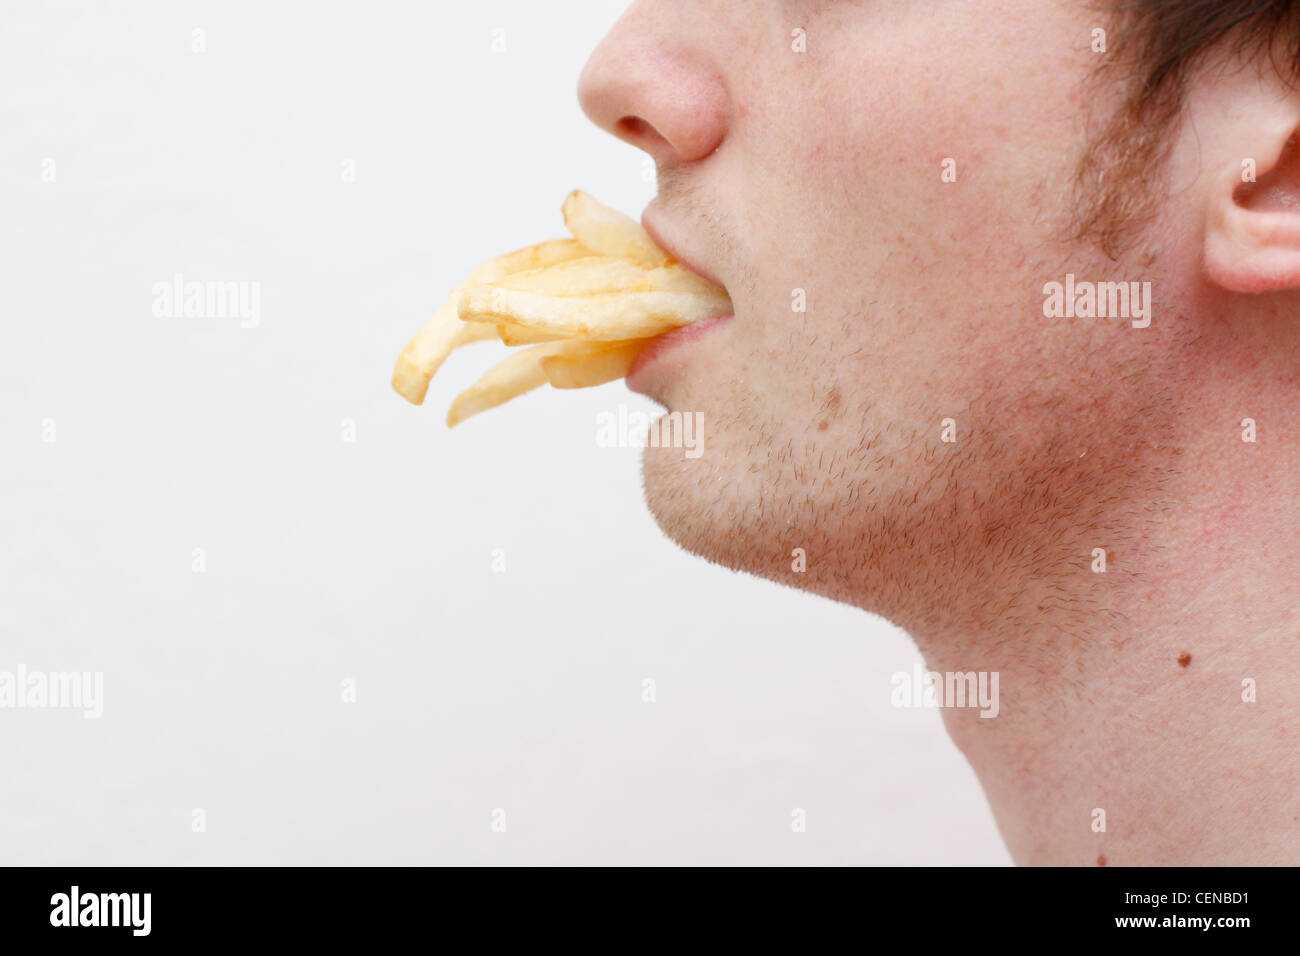 Ein Mann voller Pommes frites Stockfoto